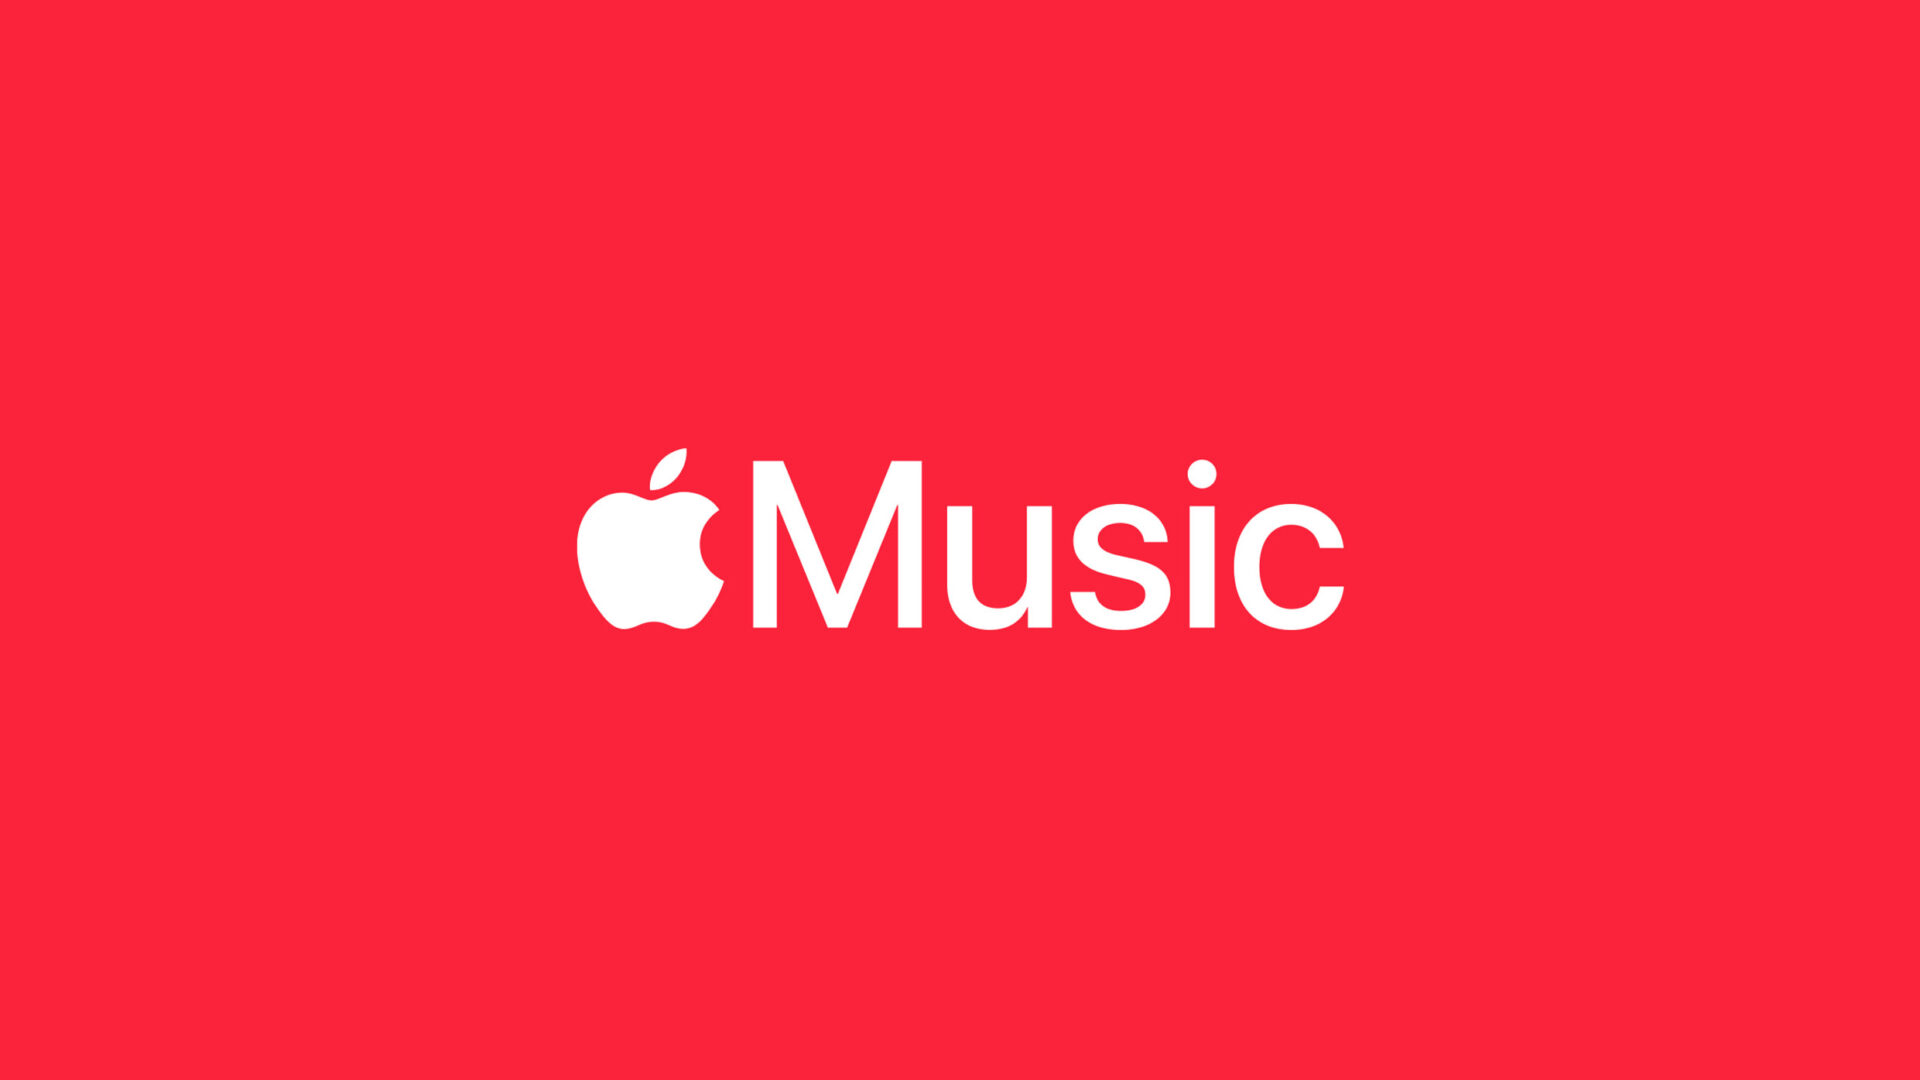 Apple เคยประกาศจะเปิดตัวแอปสตรีมมิ่งเพลงคลาสสิกภายในปี 2022 แต่จนถึงตอนนี้ยังไร้วี่แววการเปิดตัว!